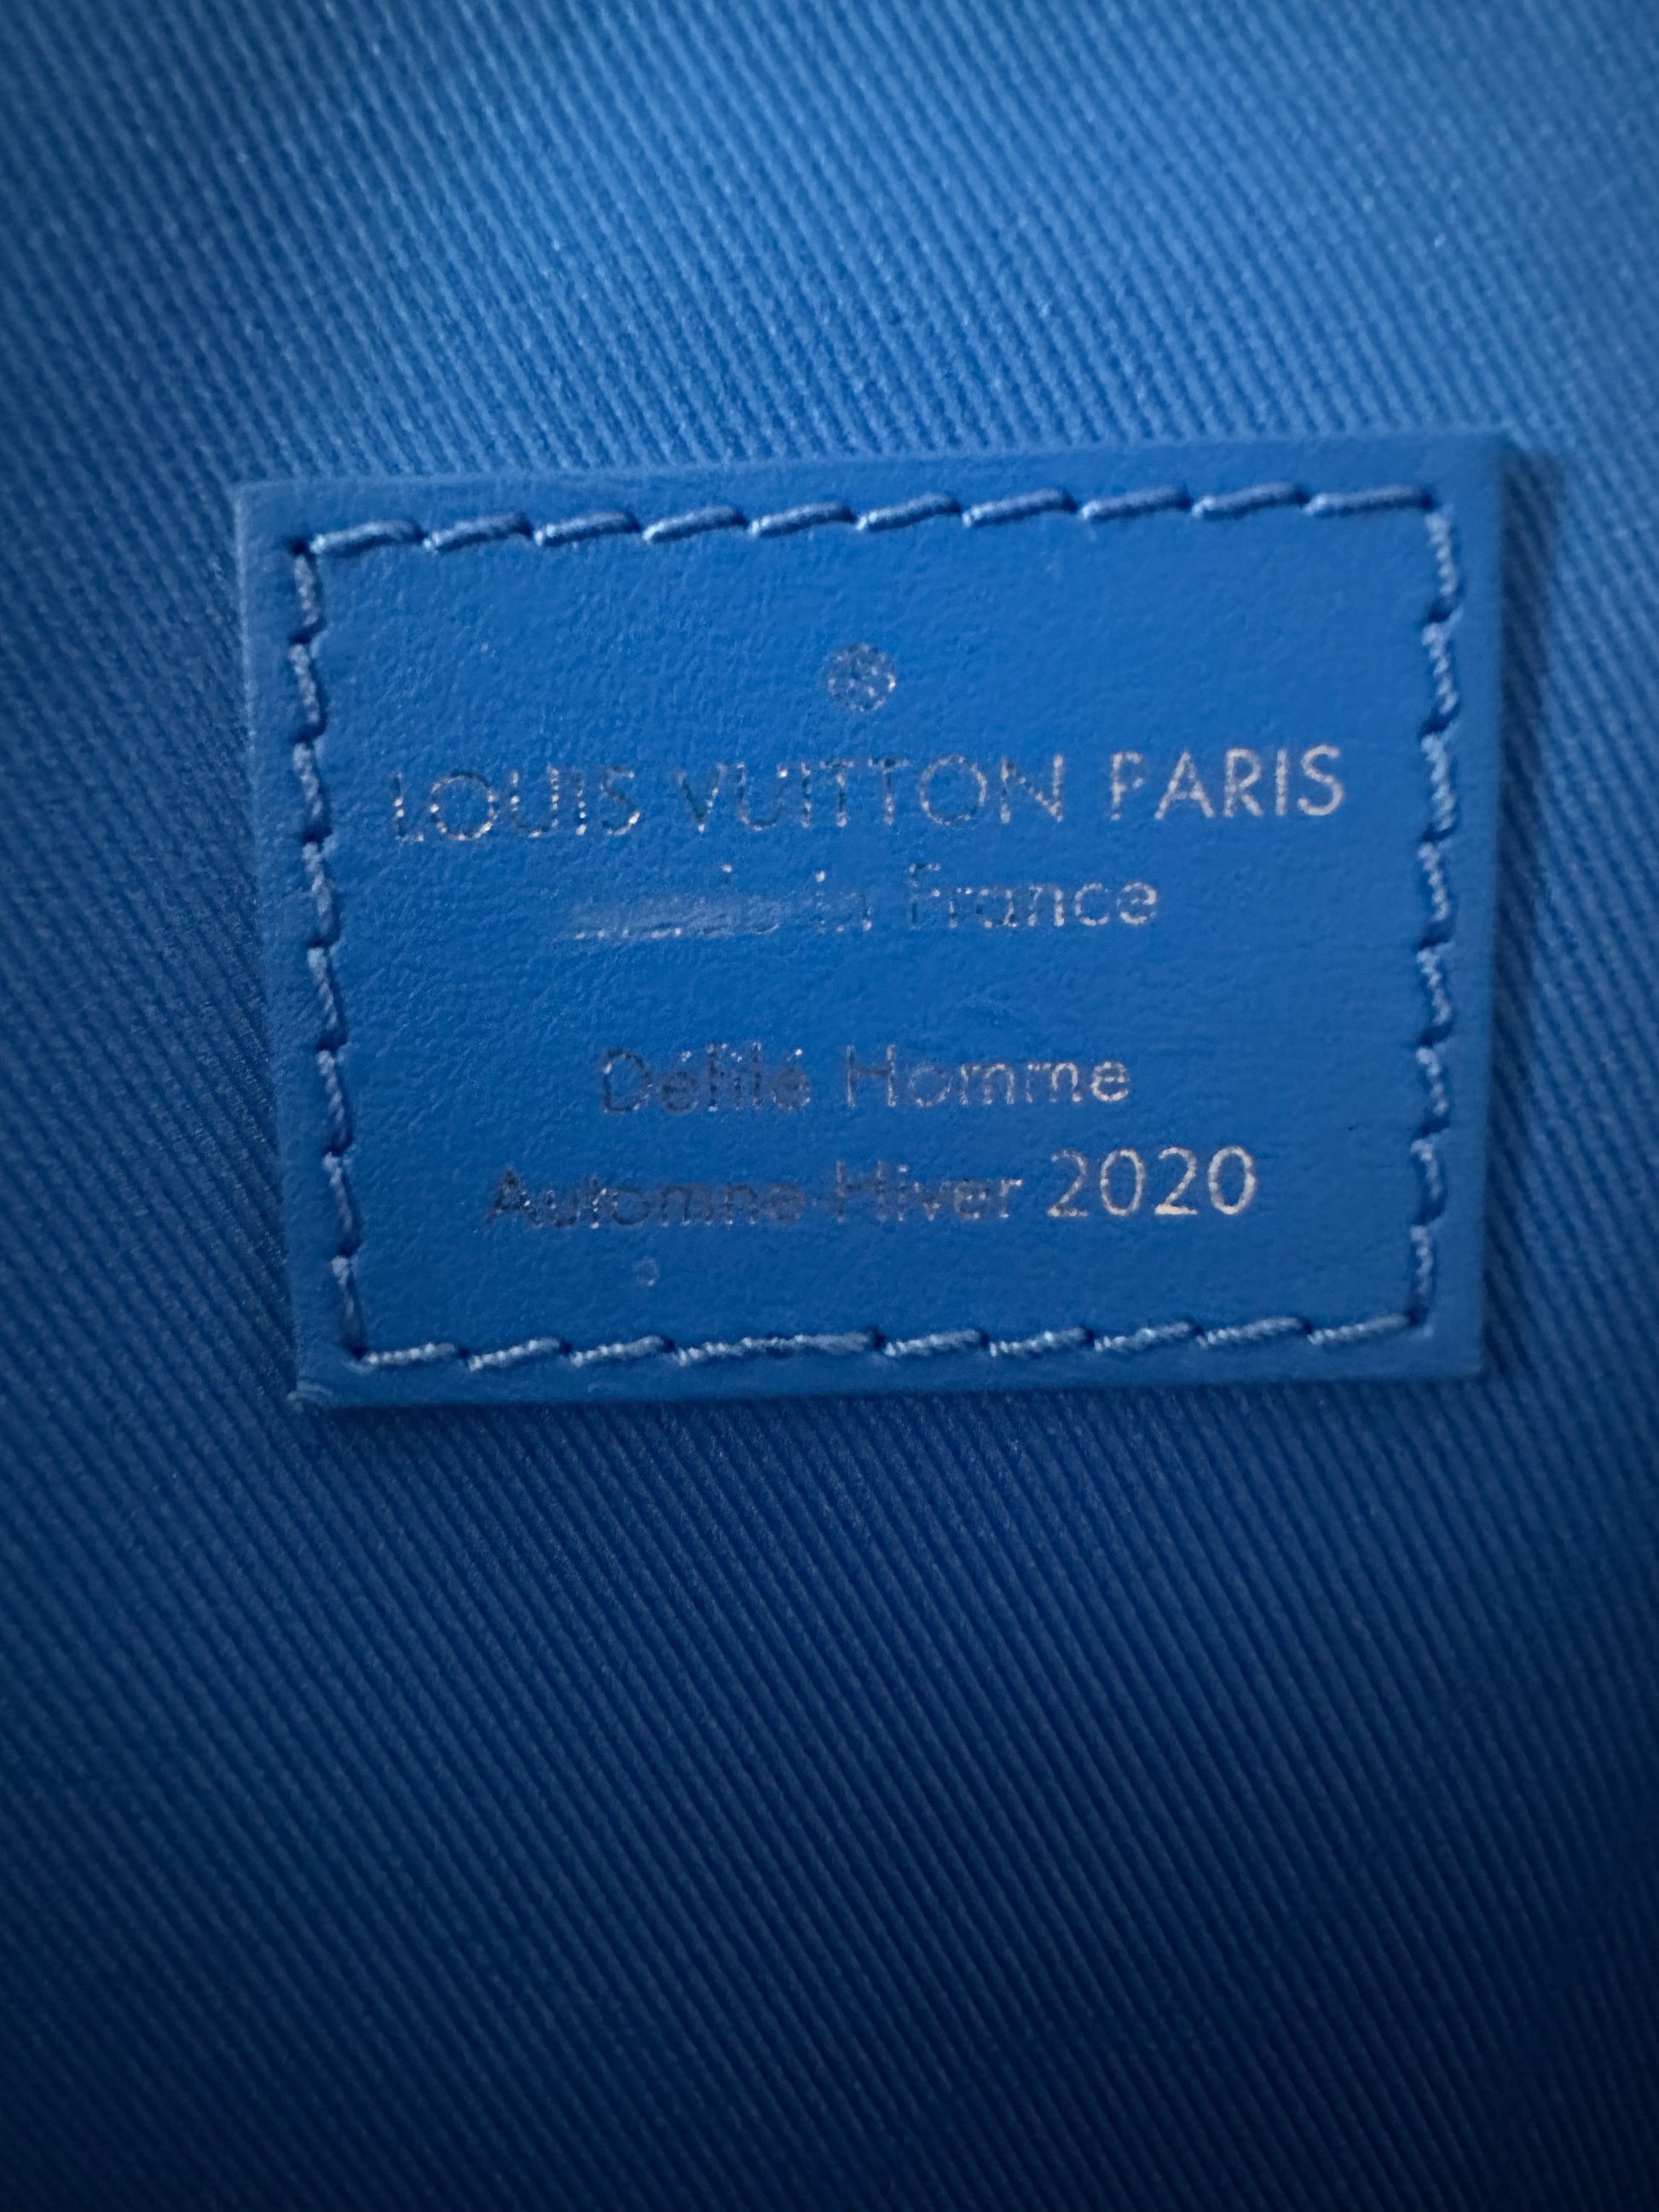 Louis Vuitton Clouds Keepall 50